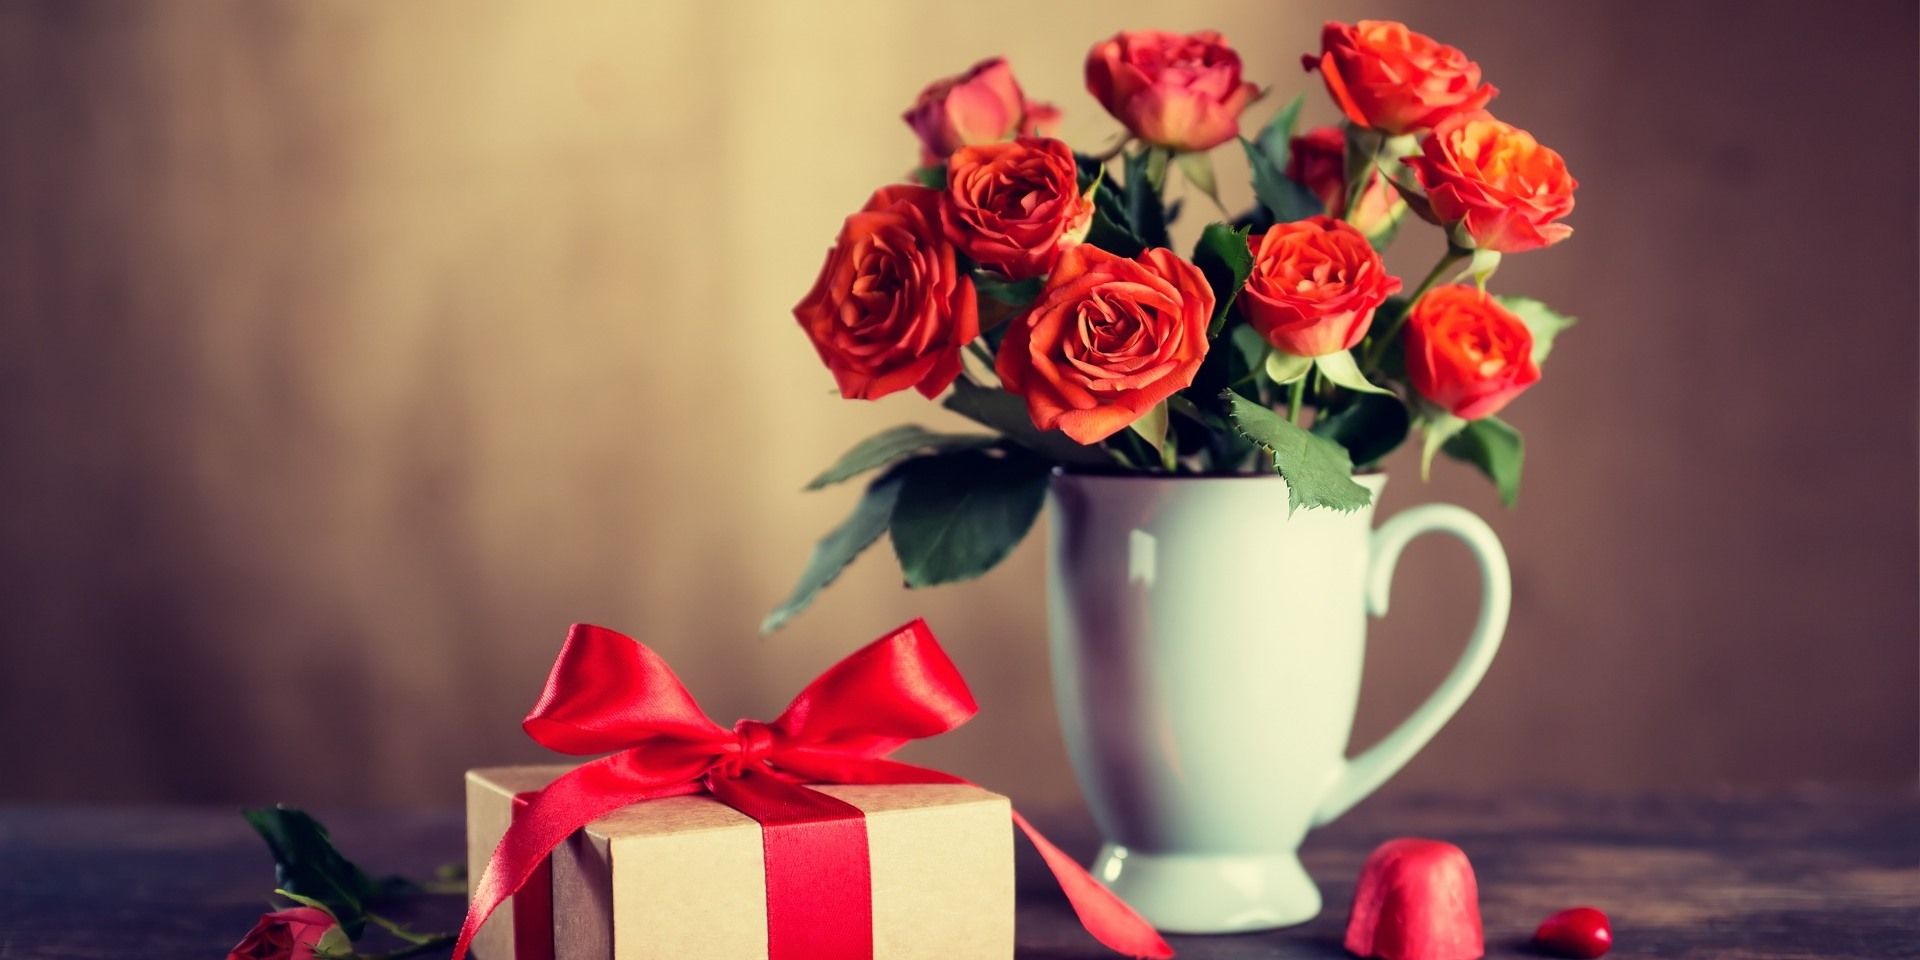 Erstellt die siebte Vorlage für einen Online-Shop zum Thema Blumenladen